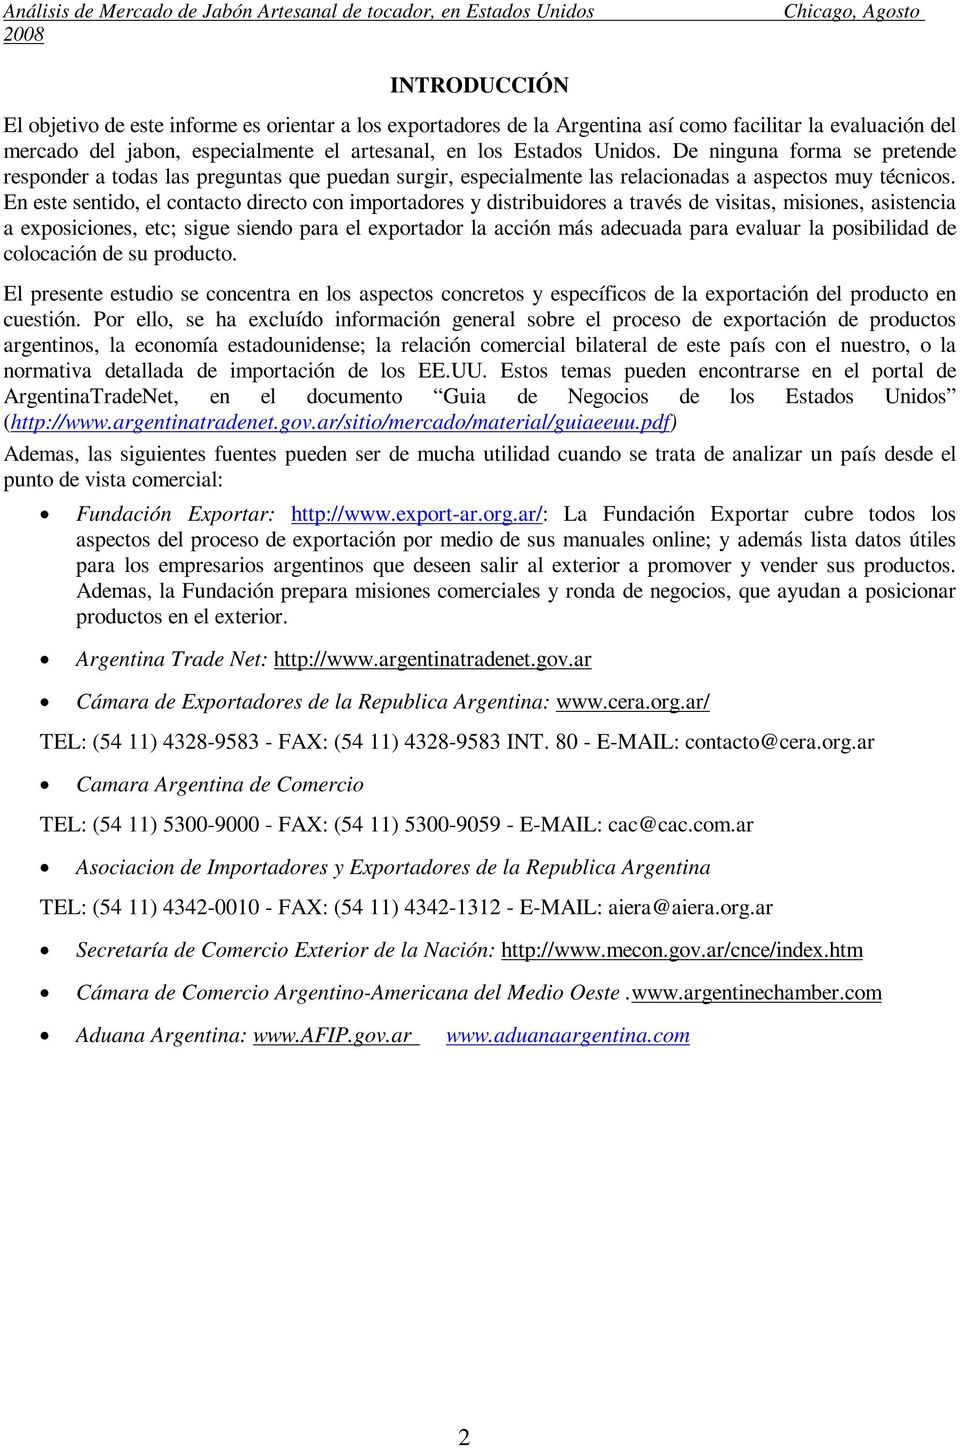 Cíclope vamos a hacerlo Aniquilar ANALISIS DEL MERCADO DE JABONES ARTESANALES EN LOS ESTADOS UNIDOS - PDF  Free Download